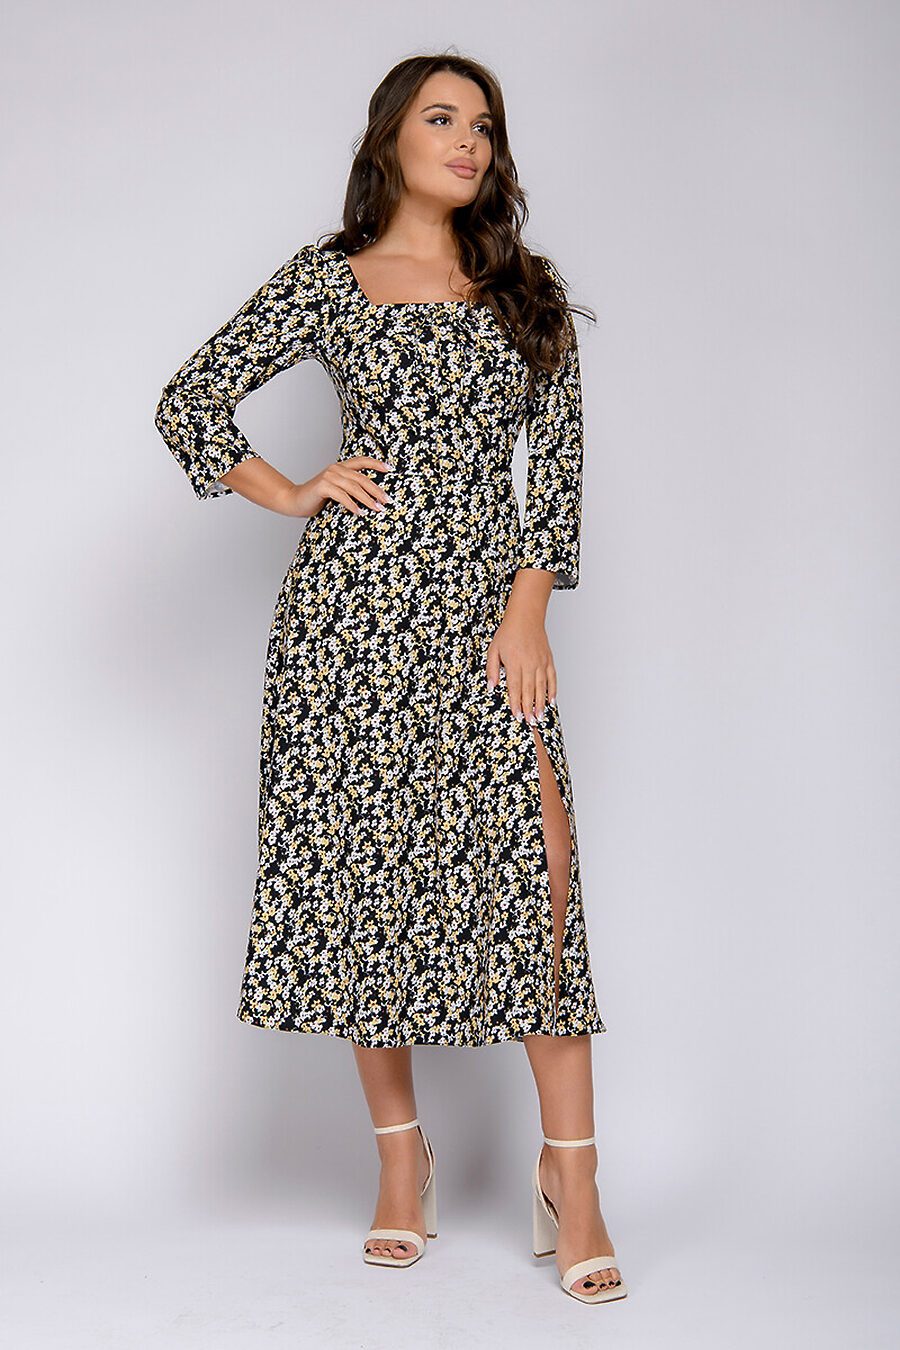 Платье для женщин 1001 DRESS 775861 купить оптом от производителя. Совместная покупка женской одежды в OptMoyo